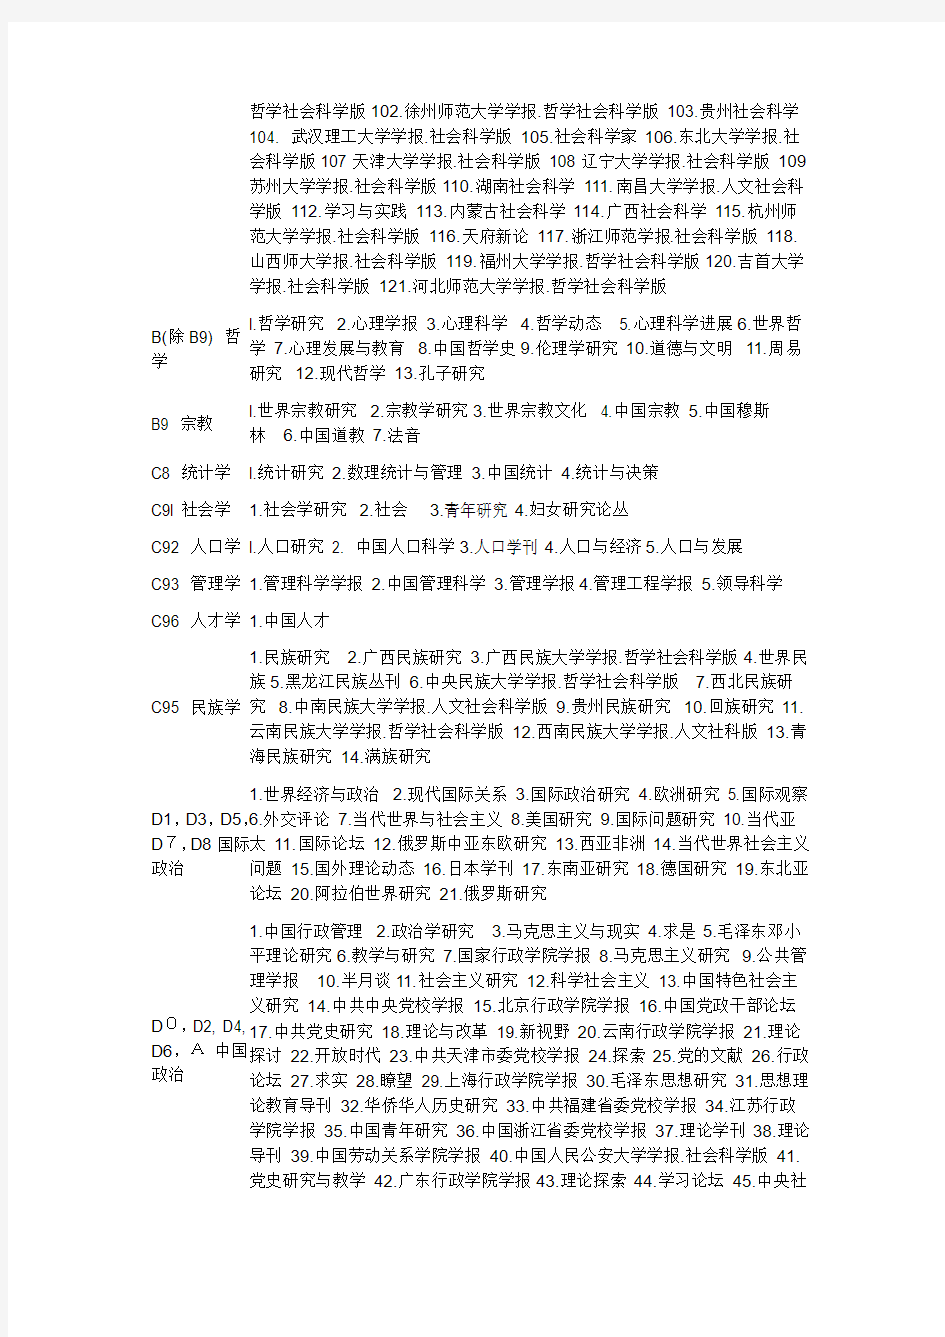 2012北大中文核心期刊目录(权威版)